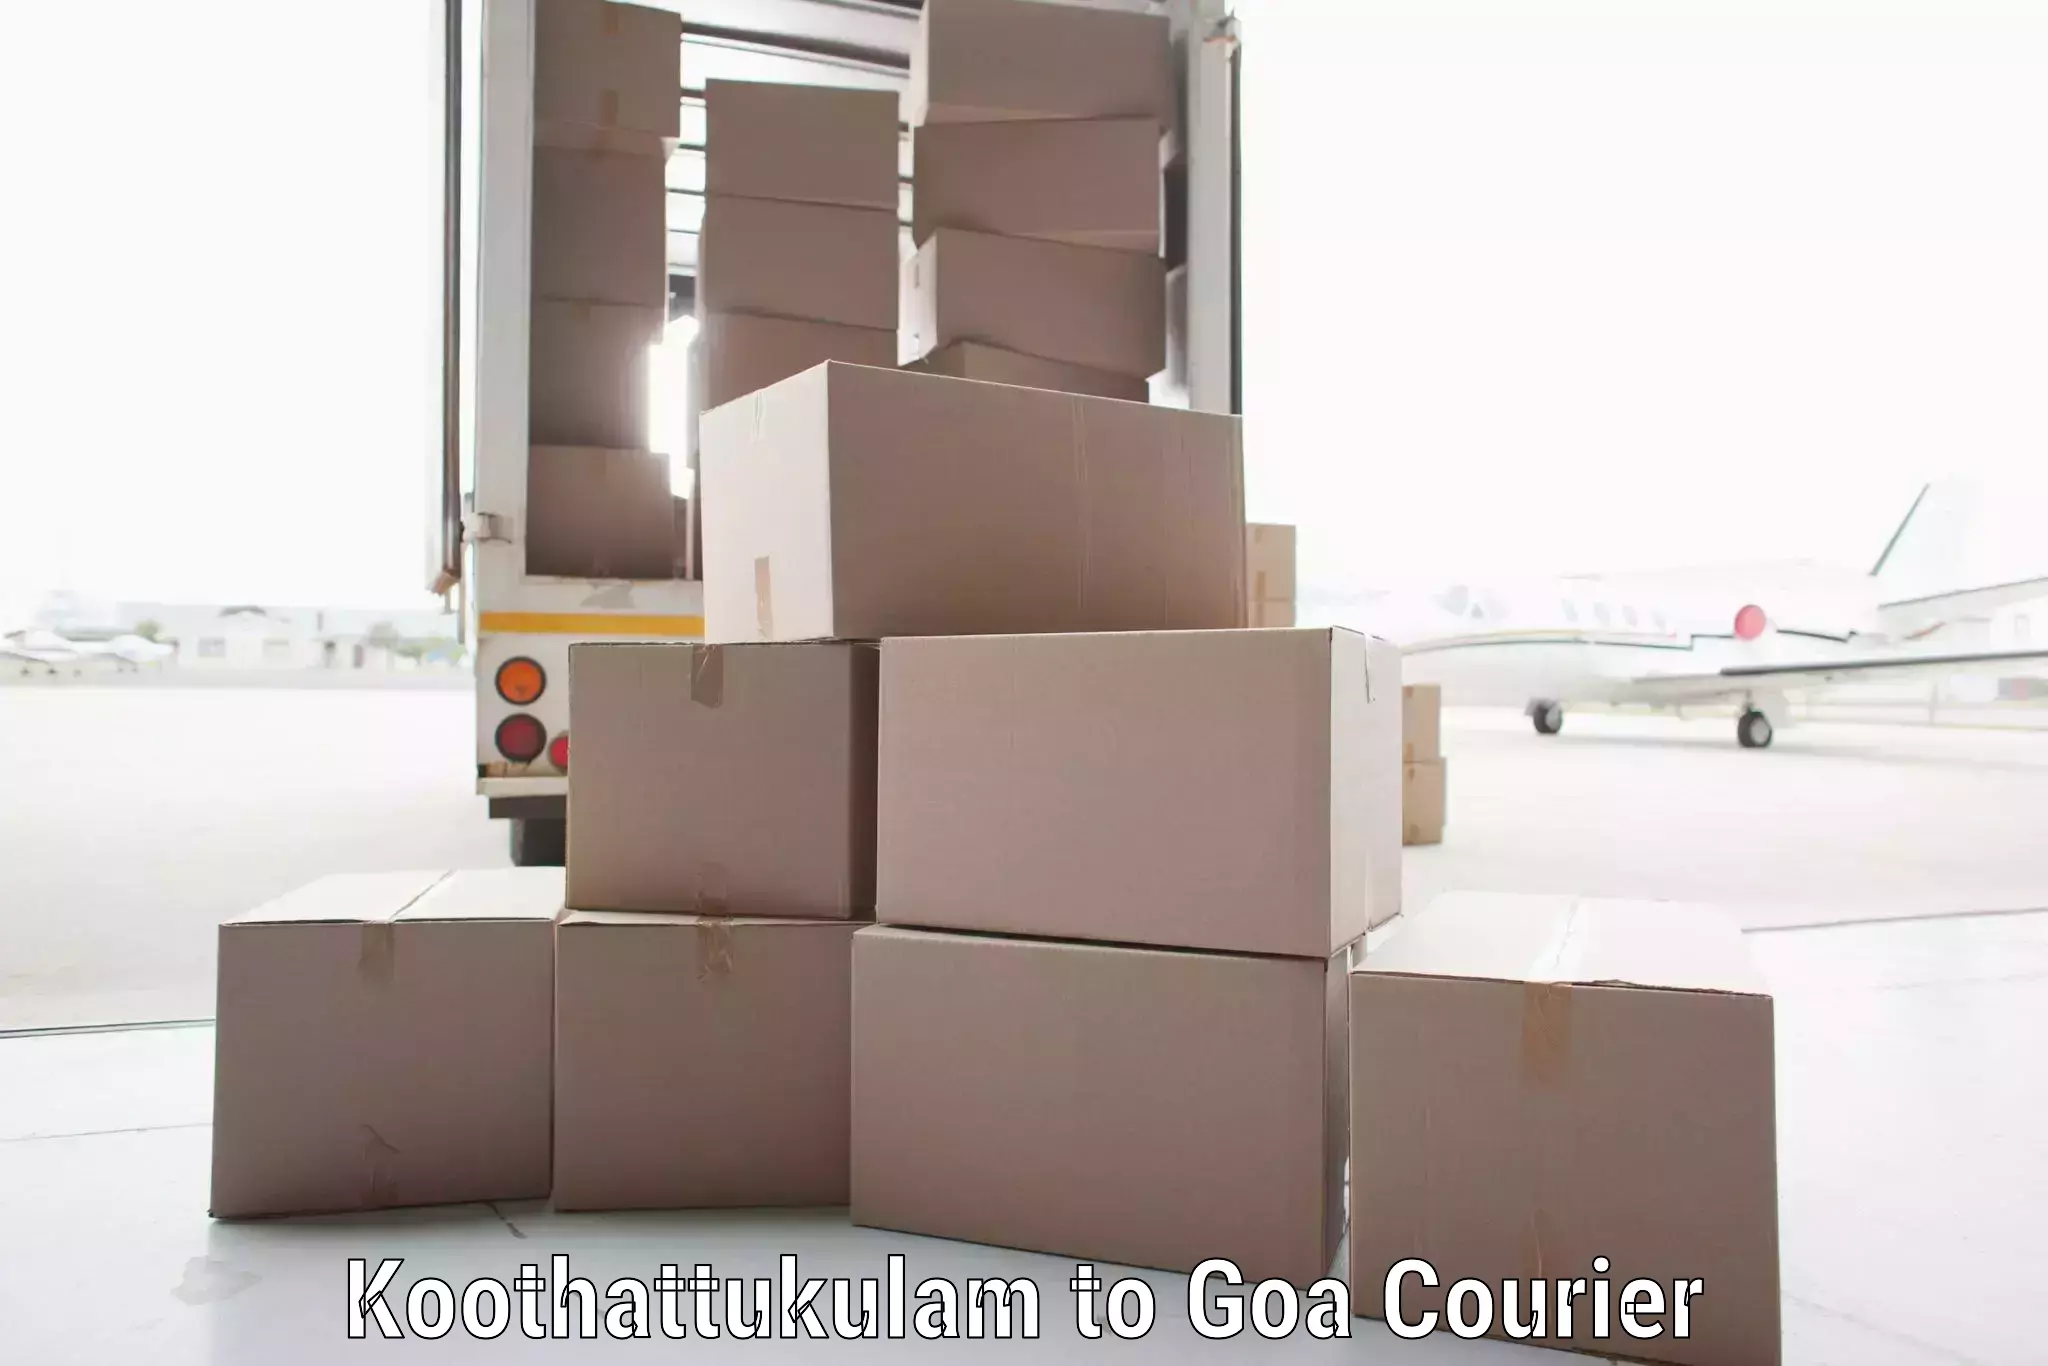 Secure shipping methods Koothattukulam to Panaji